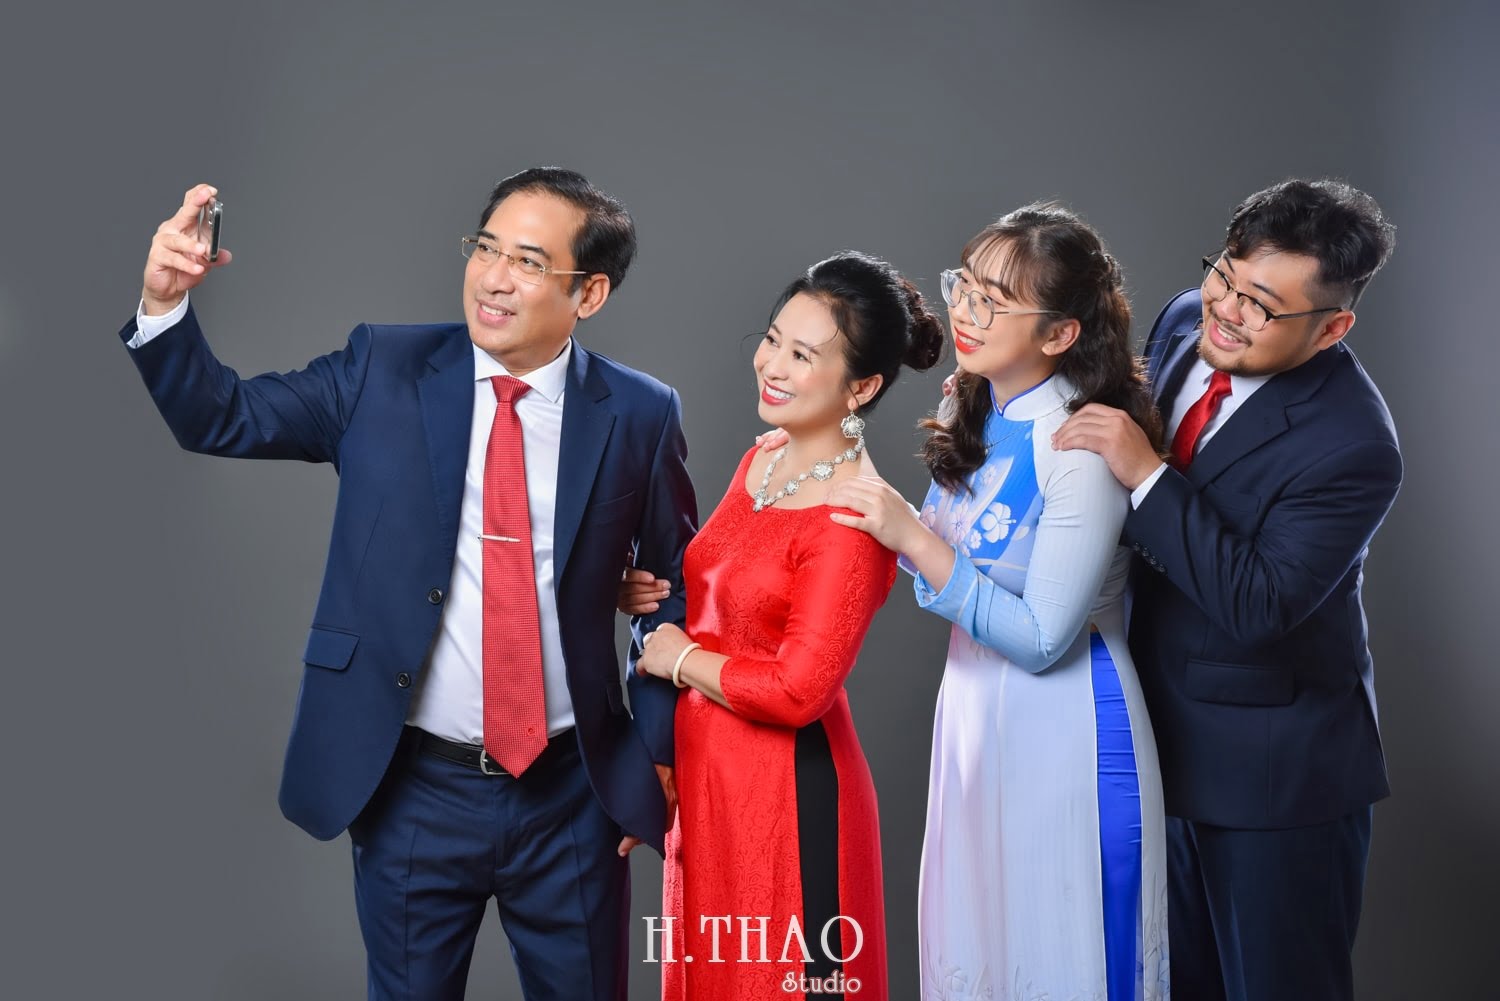 Anh gia dinh 4 nguoi 3 min - Studio chụp ảnh gia đình tự nhiên nhất tại Tp.HCM – HThao Studio